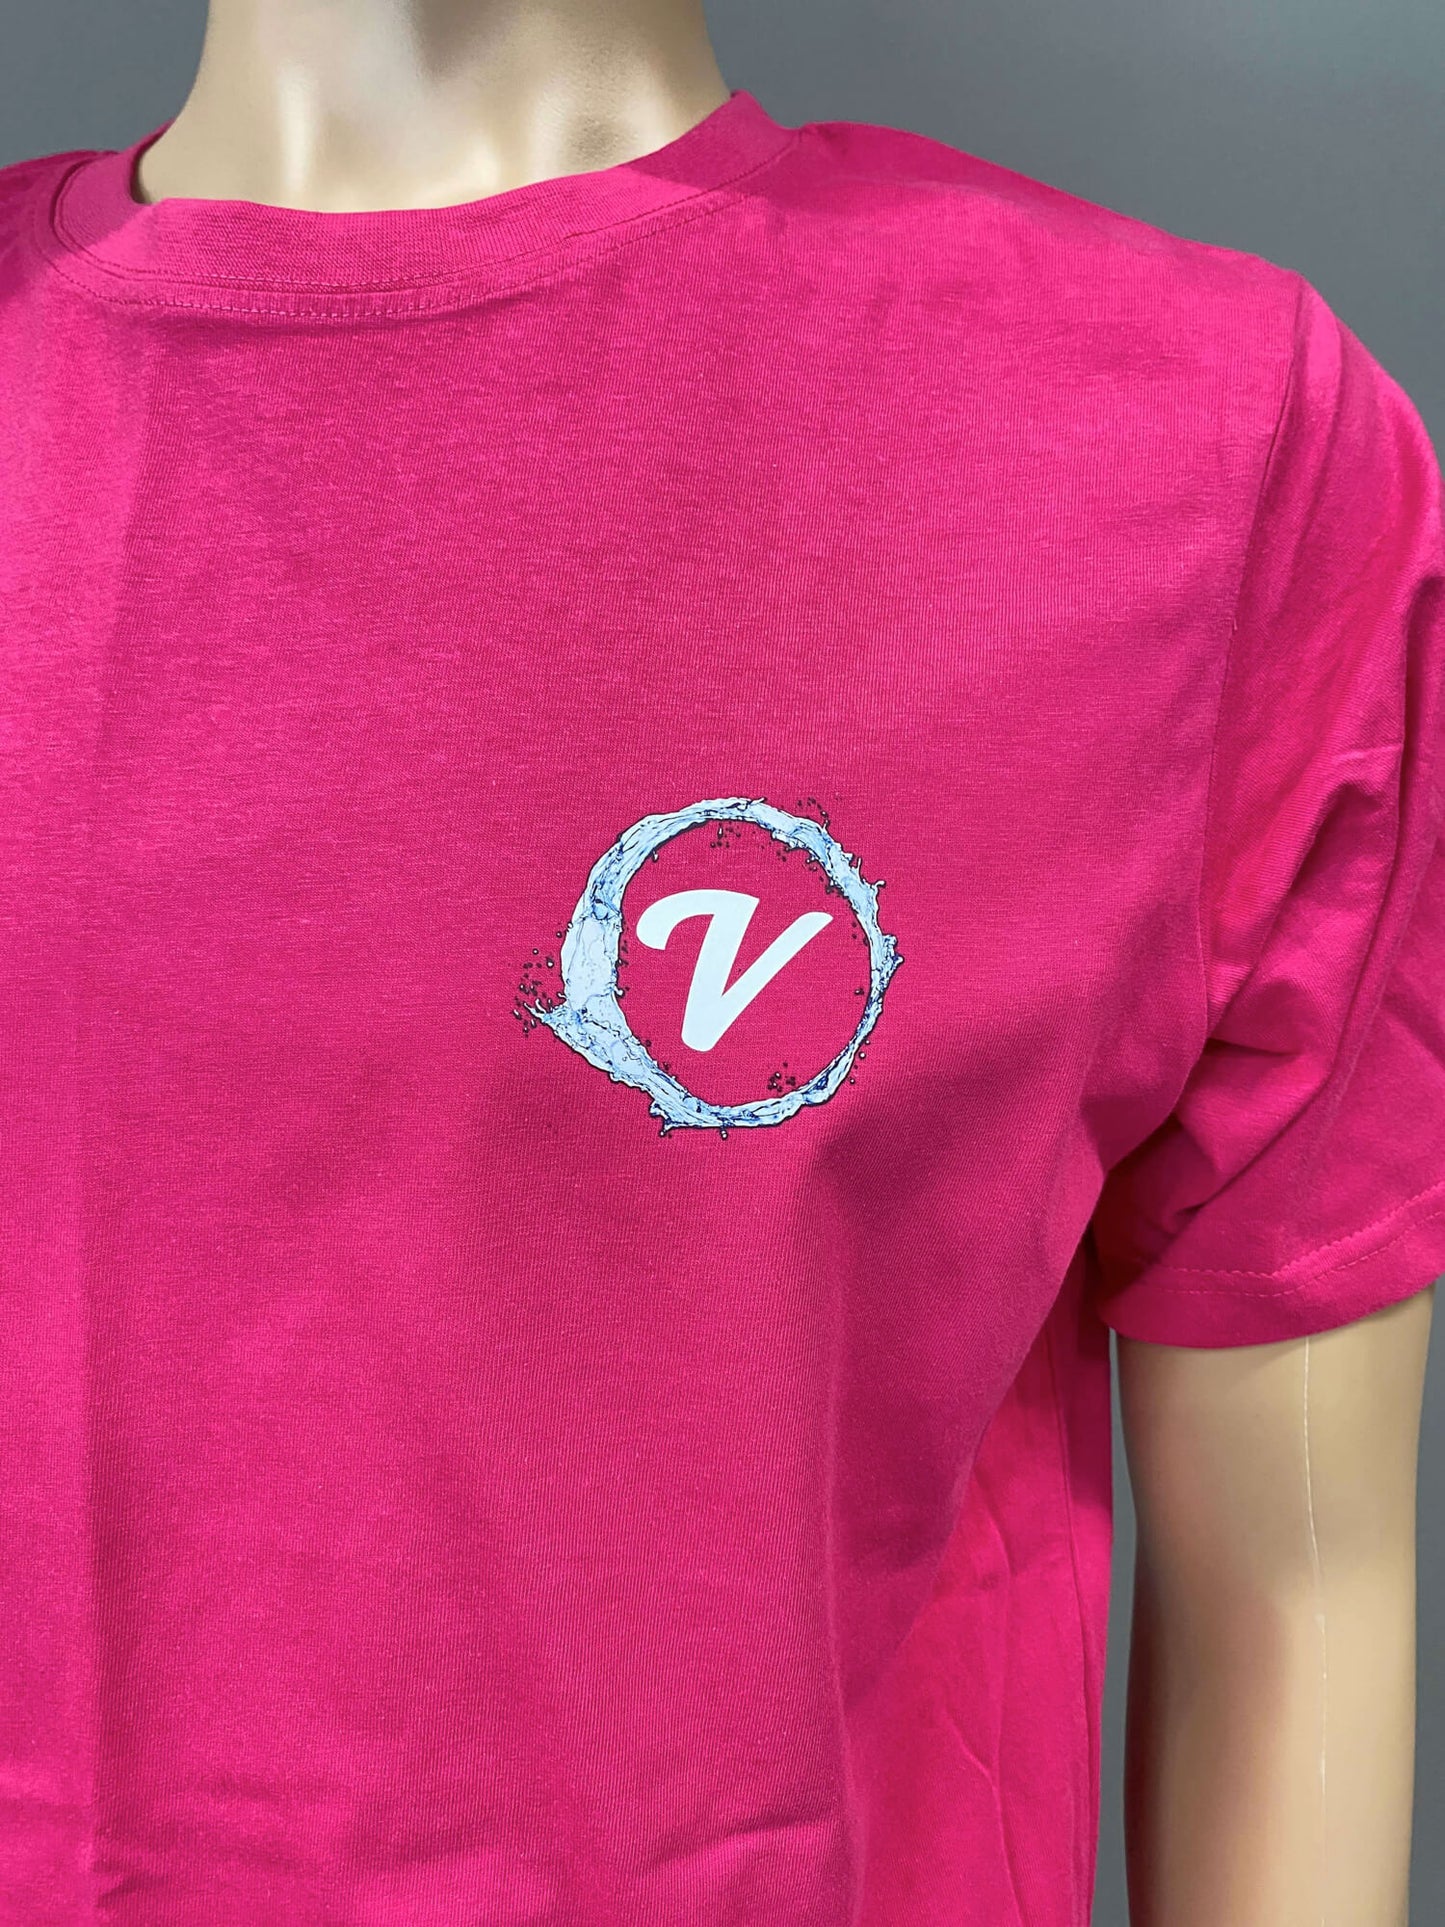 ViDrate Unisex Lounge T-Shirt - FUCHSIA